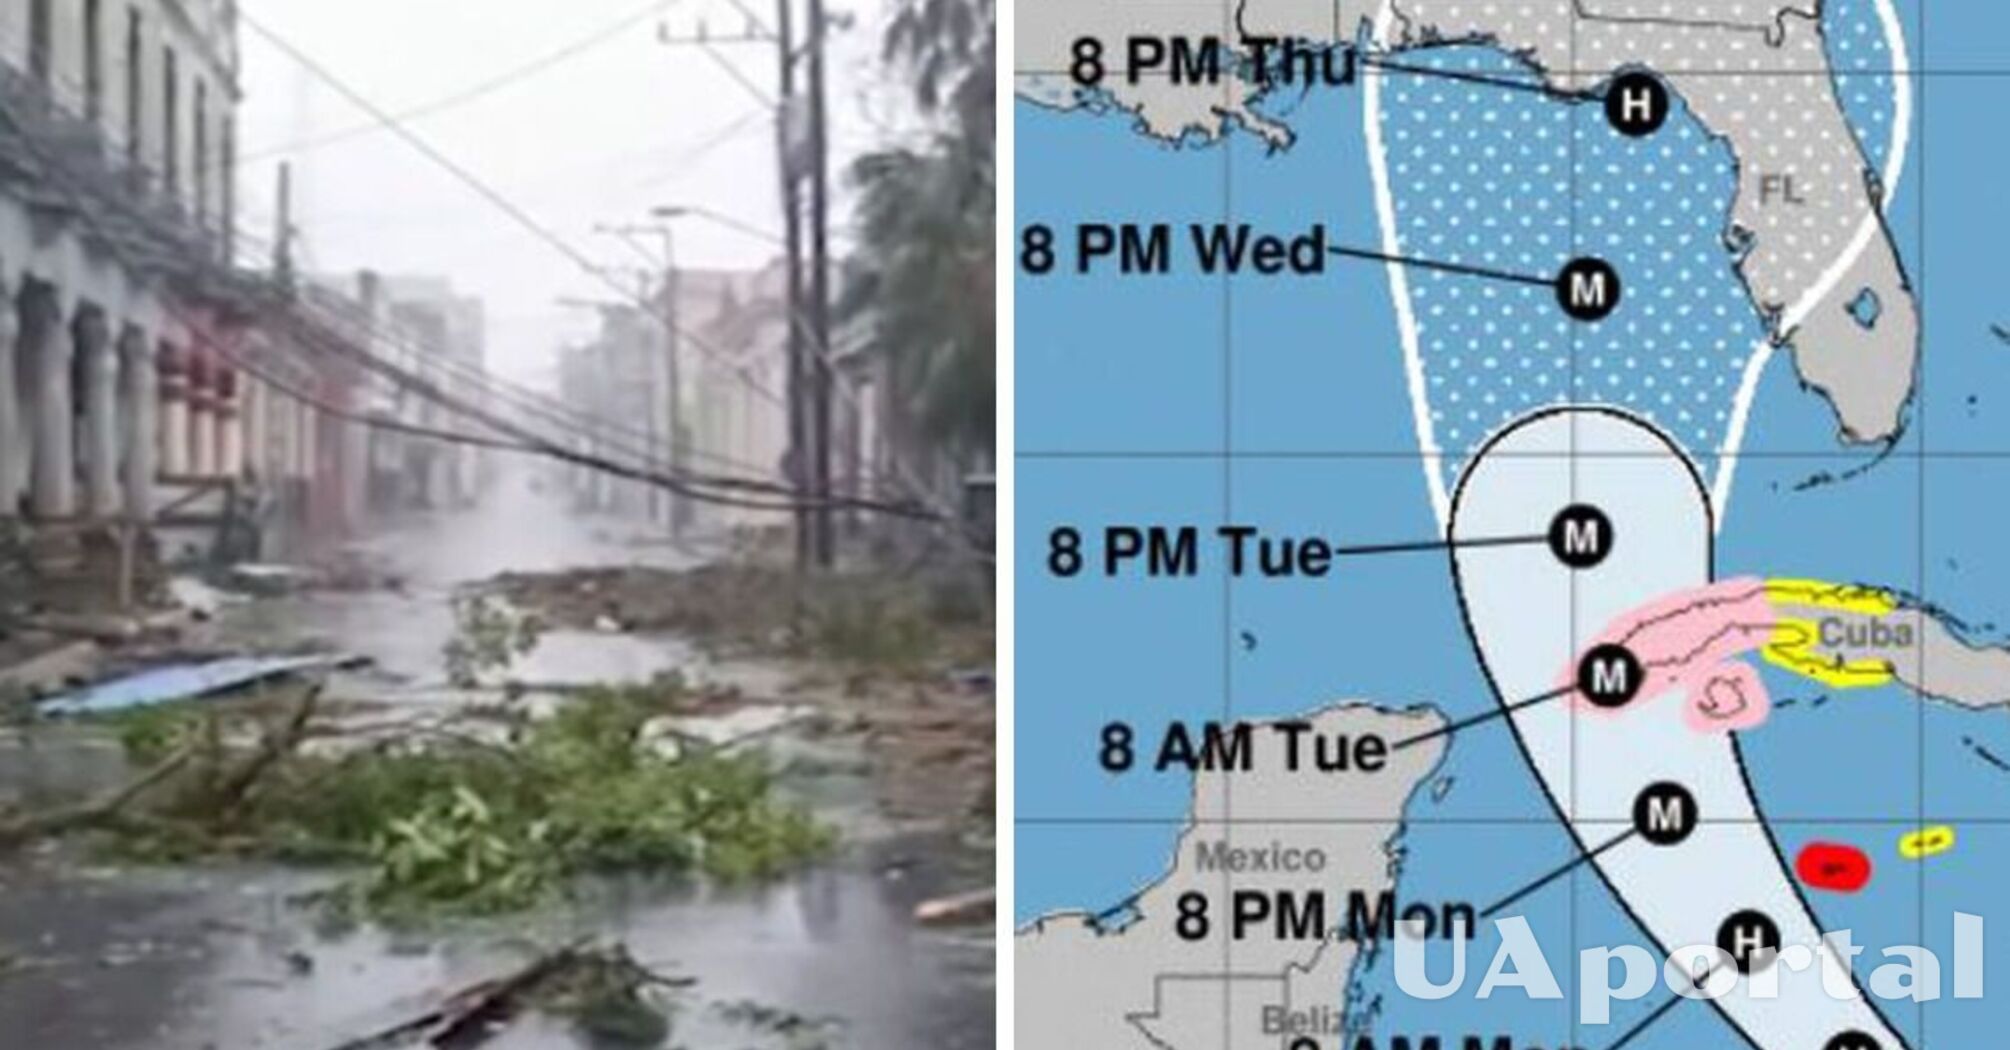 У берегов США свирепствует ураган: во Флориде объявили эвакуацию 2,5 млн человек (видео)